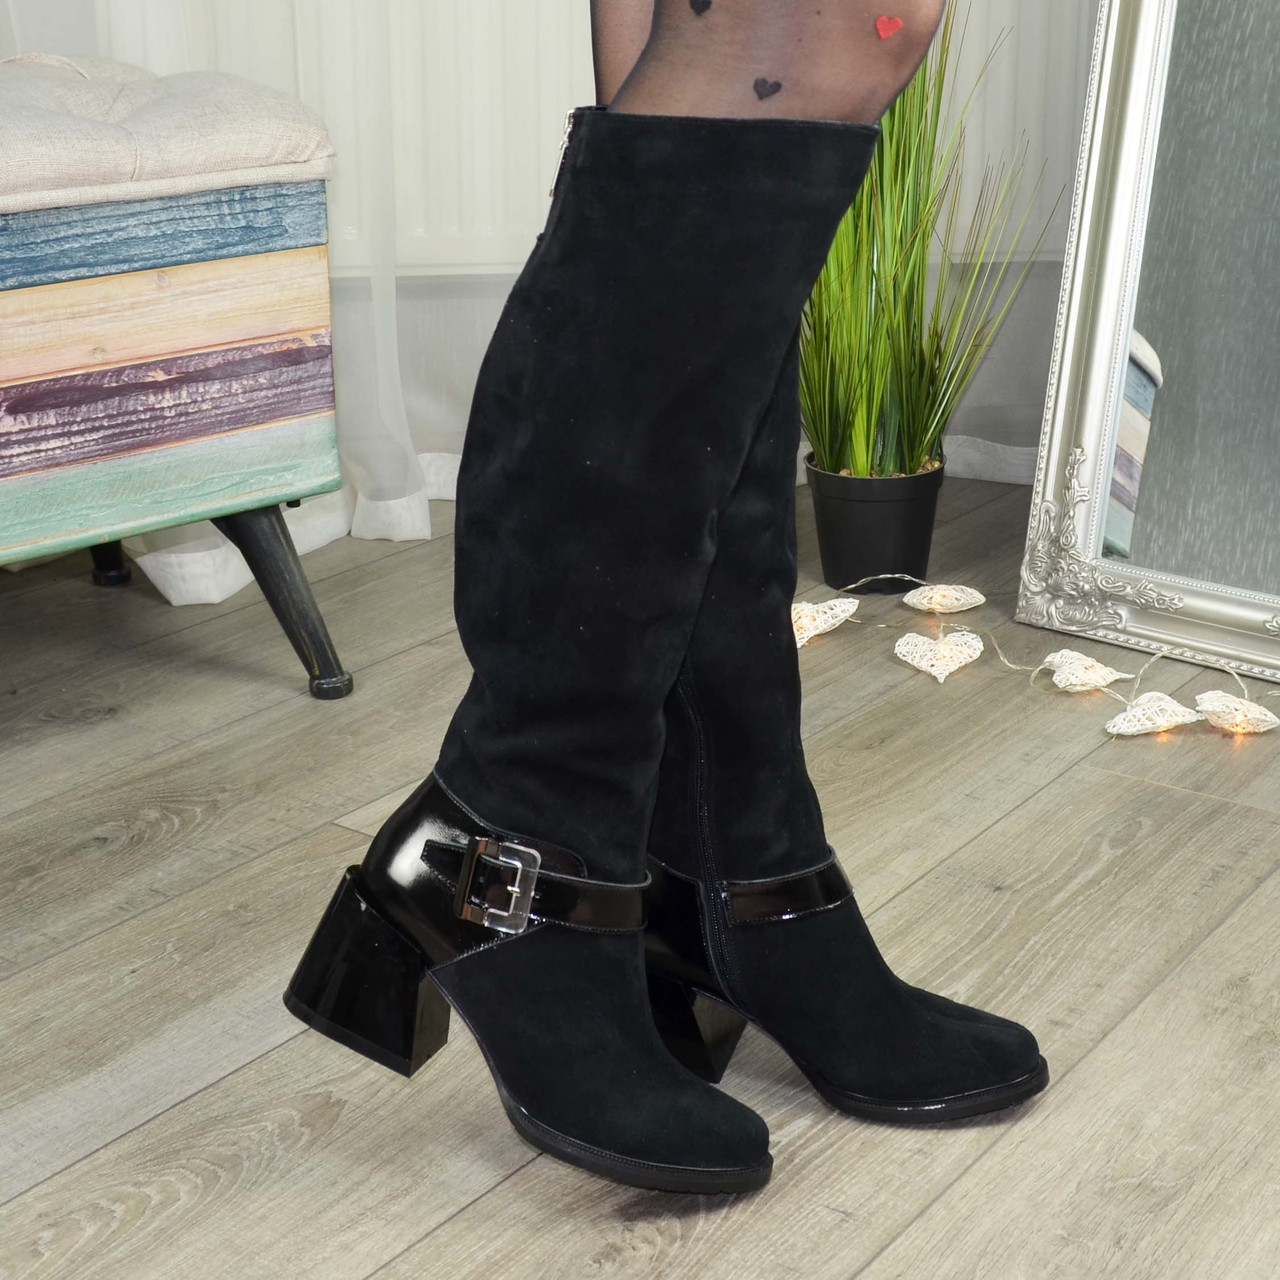 Високі чорні жіночі чоботи на підборах. Натуральна замша та шкіра лакова